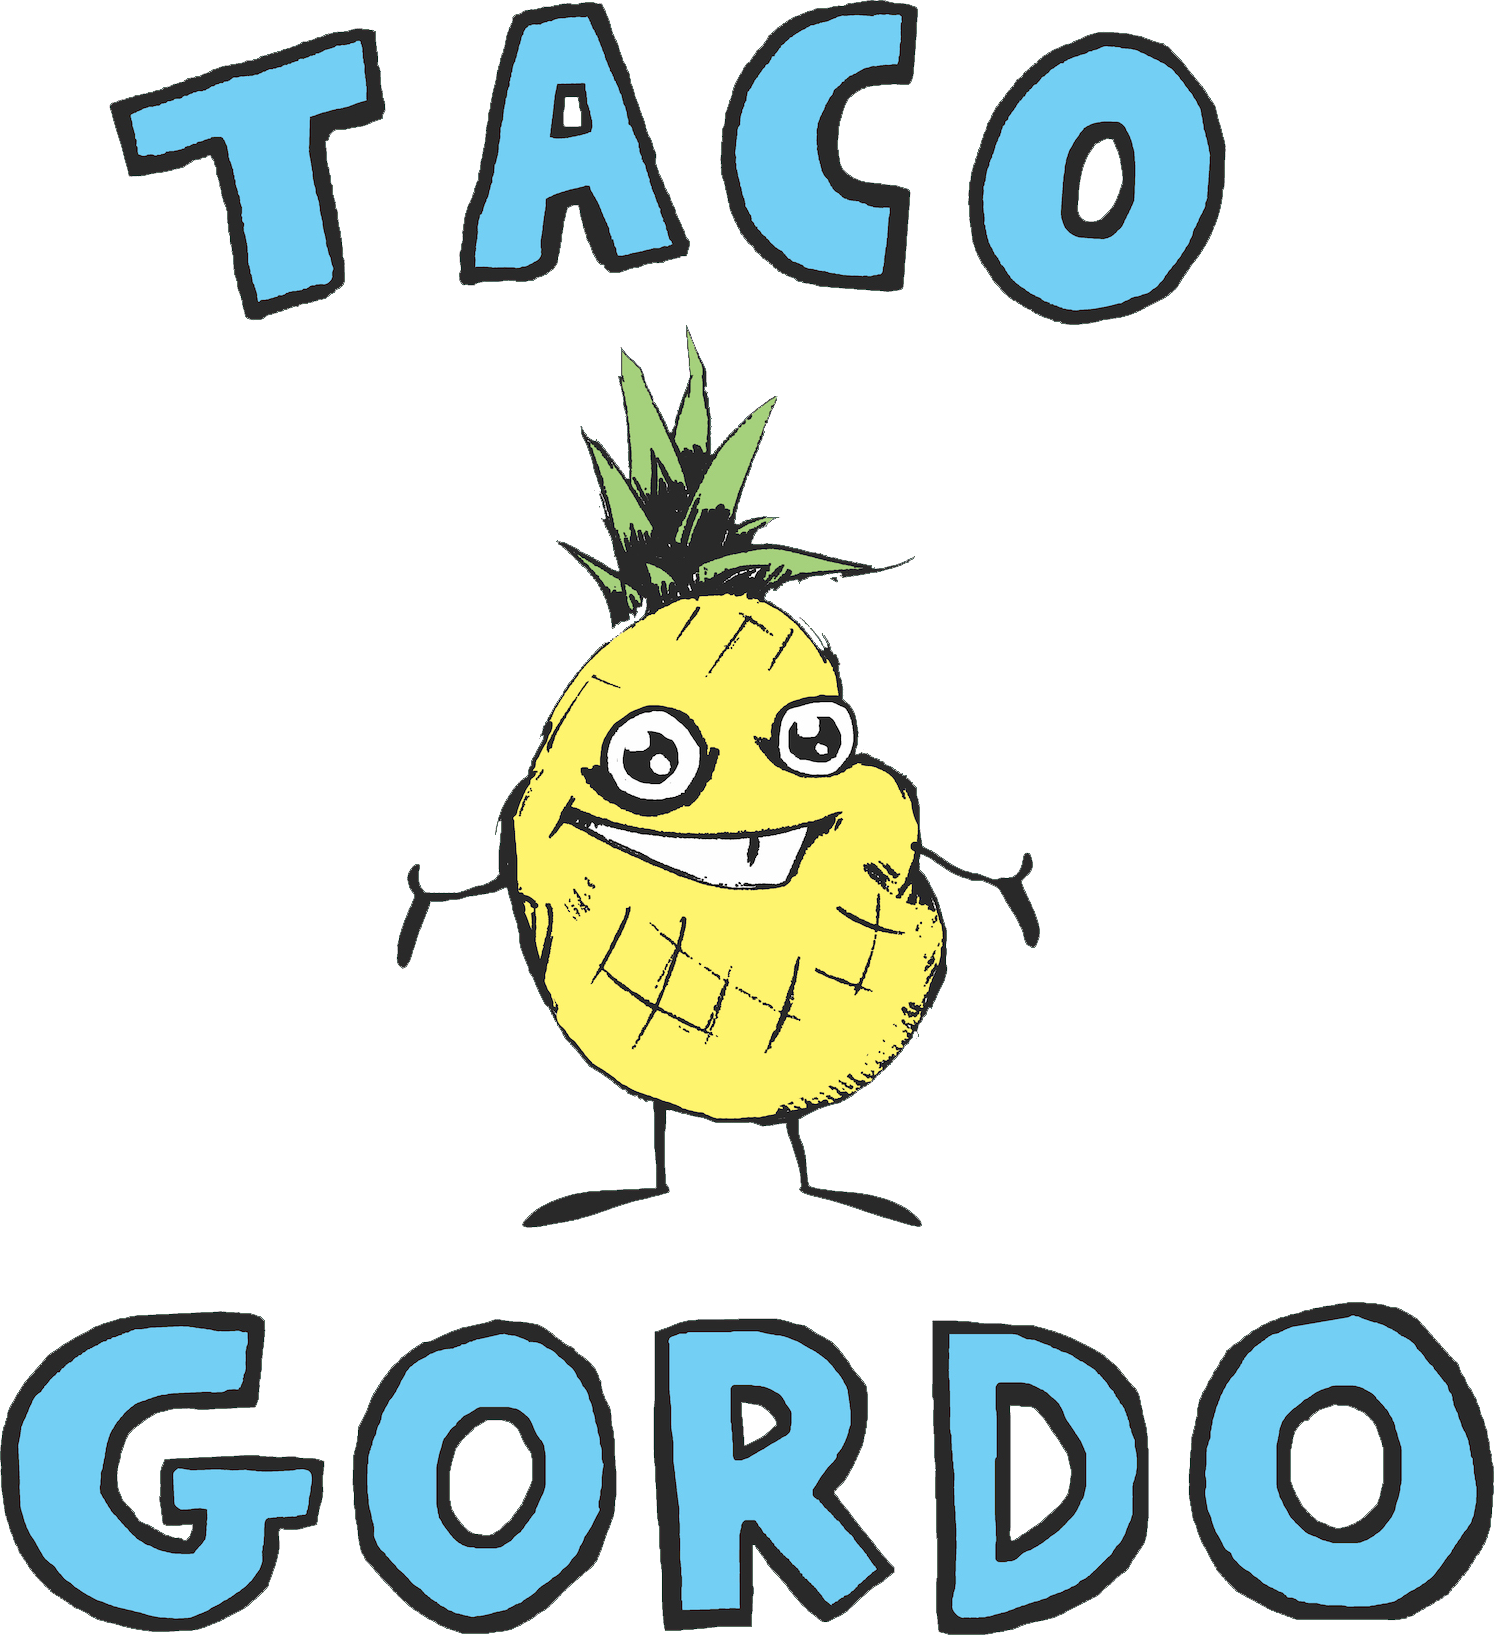 Taco Gordo